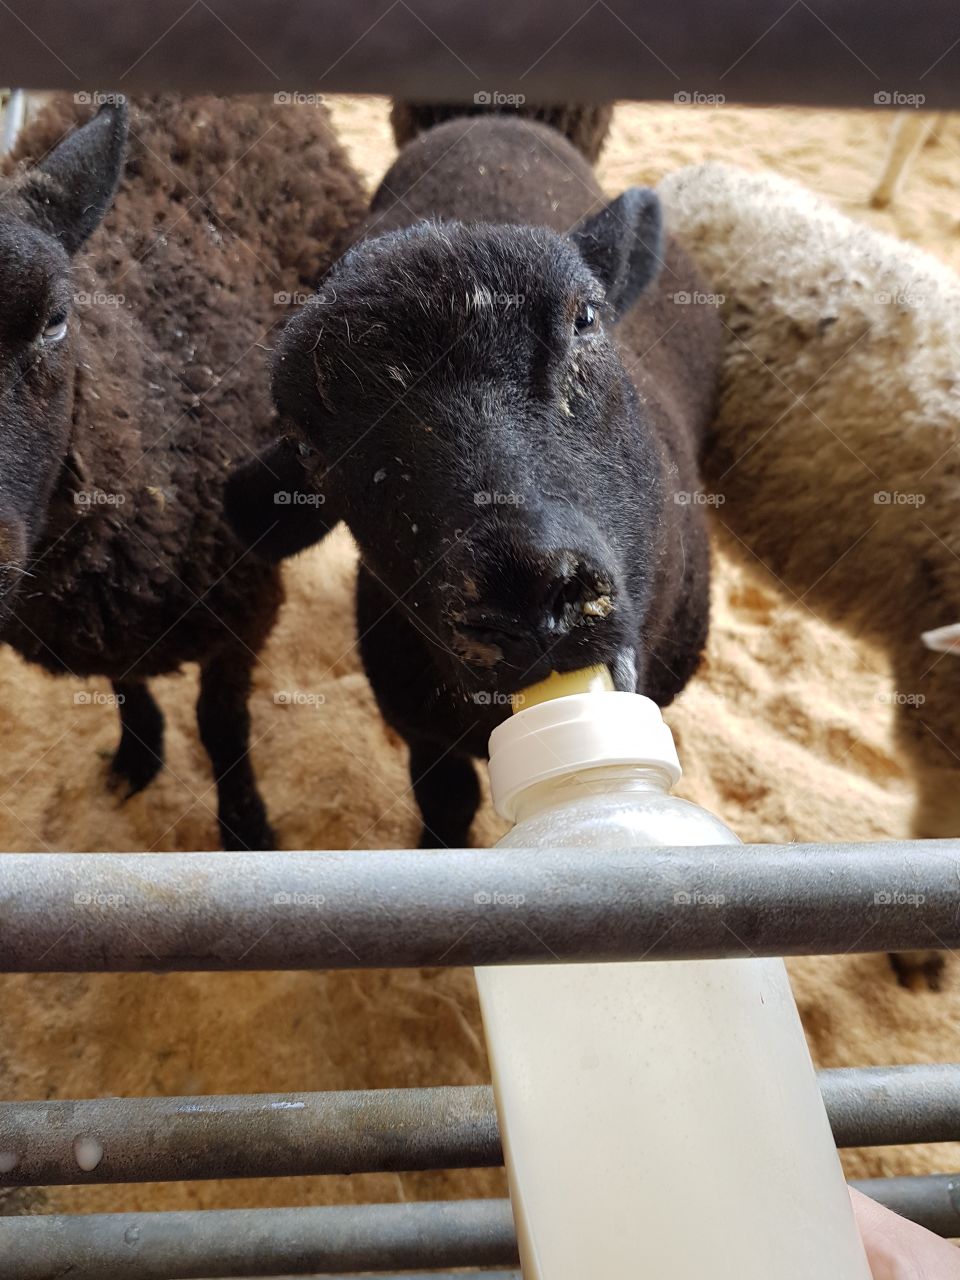 lamb feeding